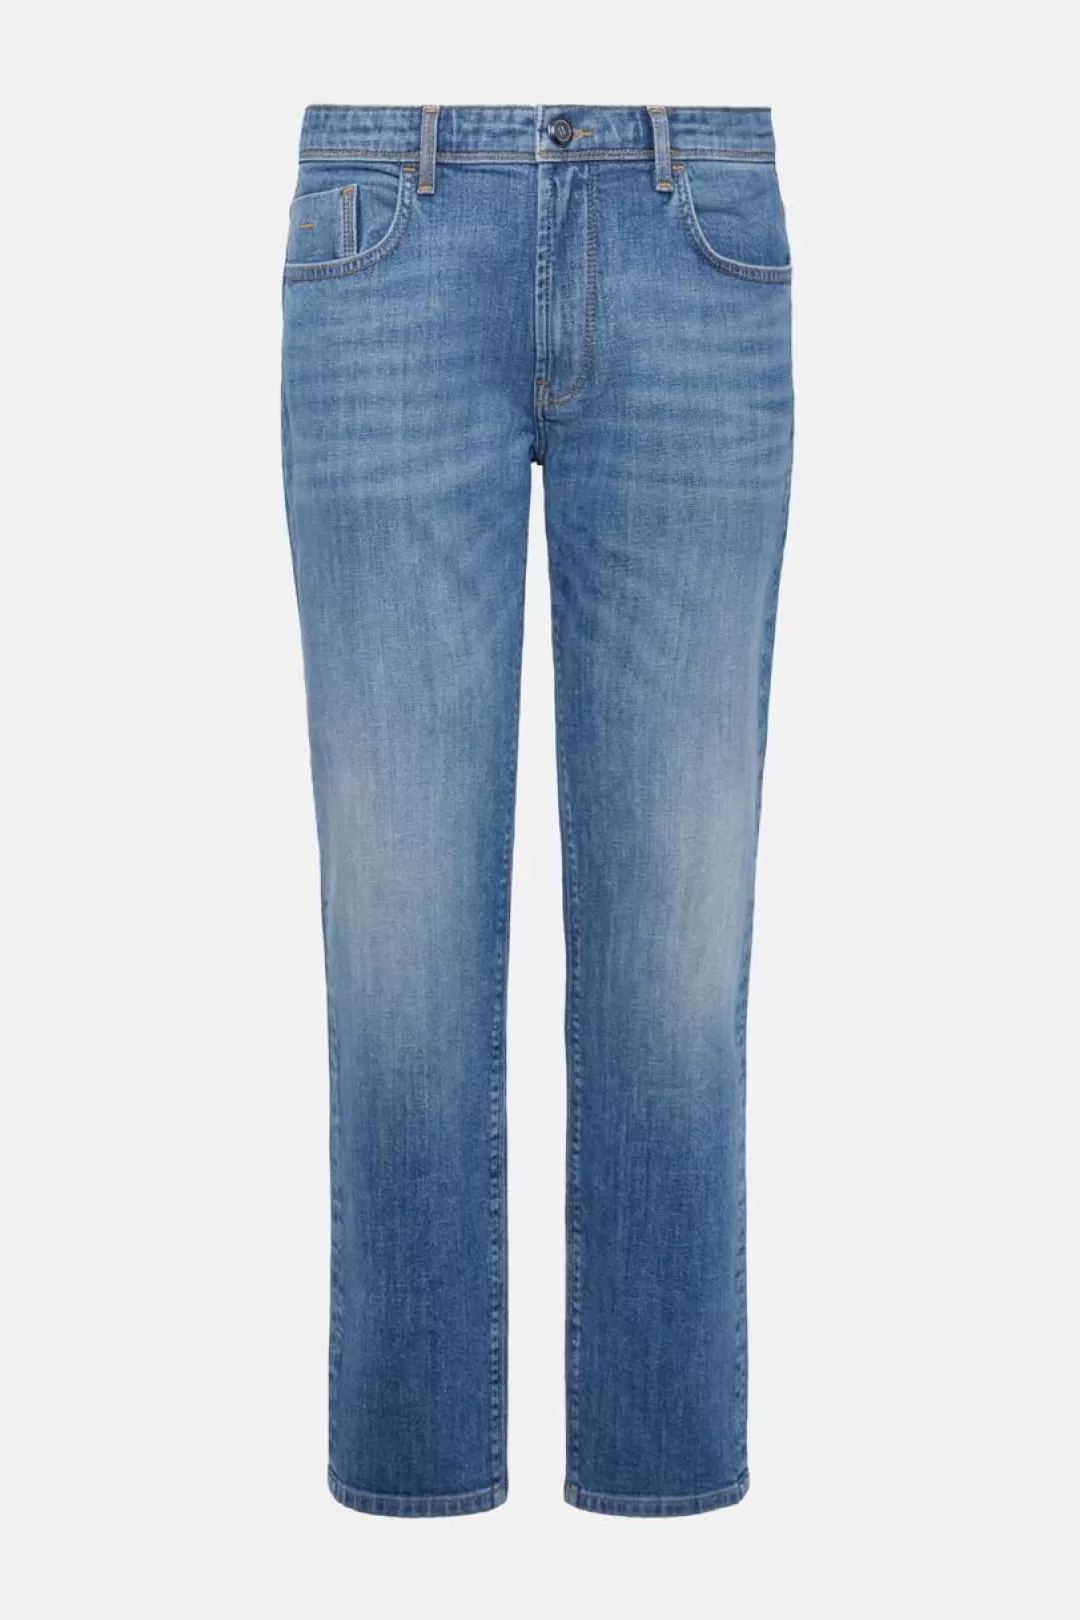 Boggi Jeans In Denim Elasticizzato Blu Scuro Sale